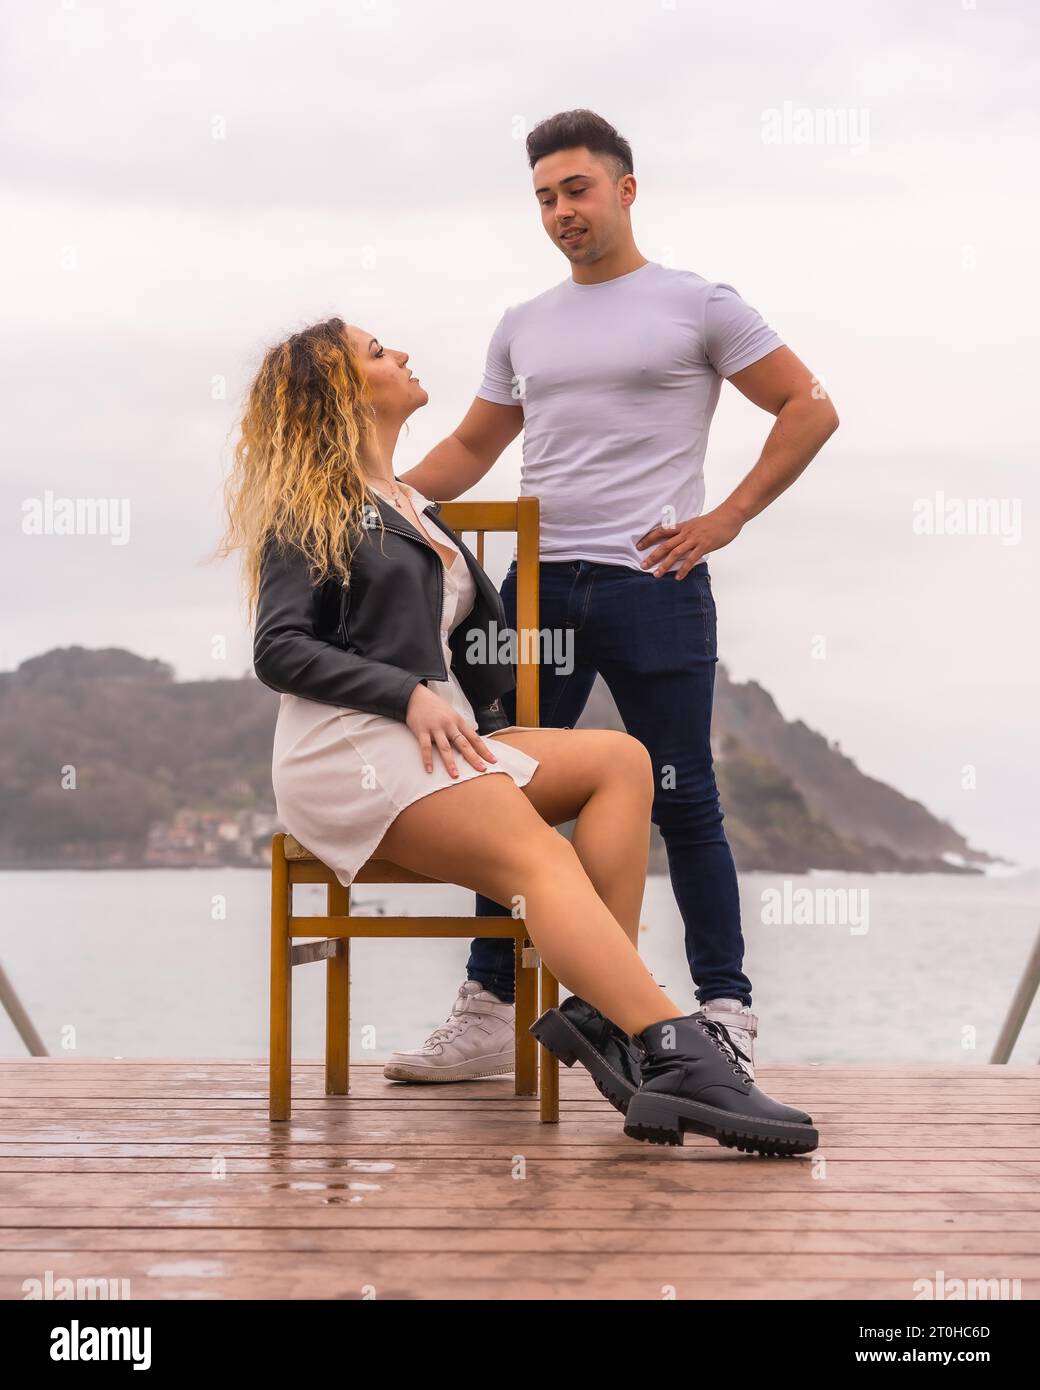 Modische Pose eines kaukasischen Paares im Urlaub am Meer. Junge Frau sitzt und Junge neben ihr Stockfoto